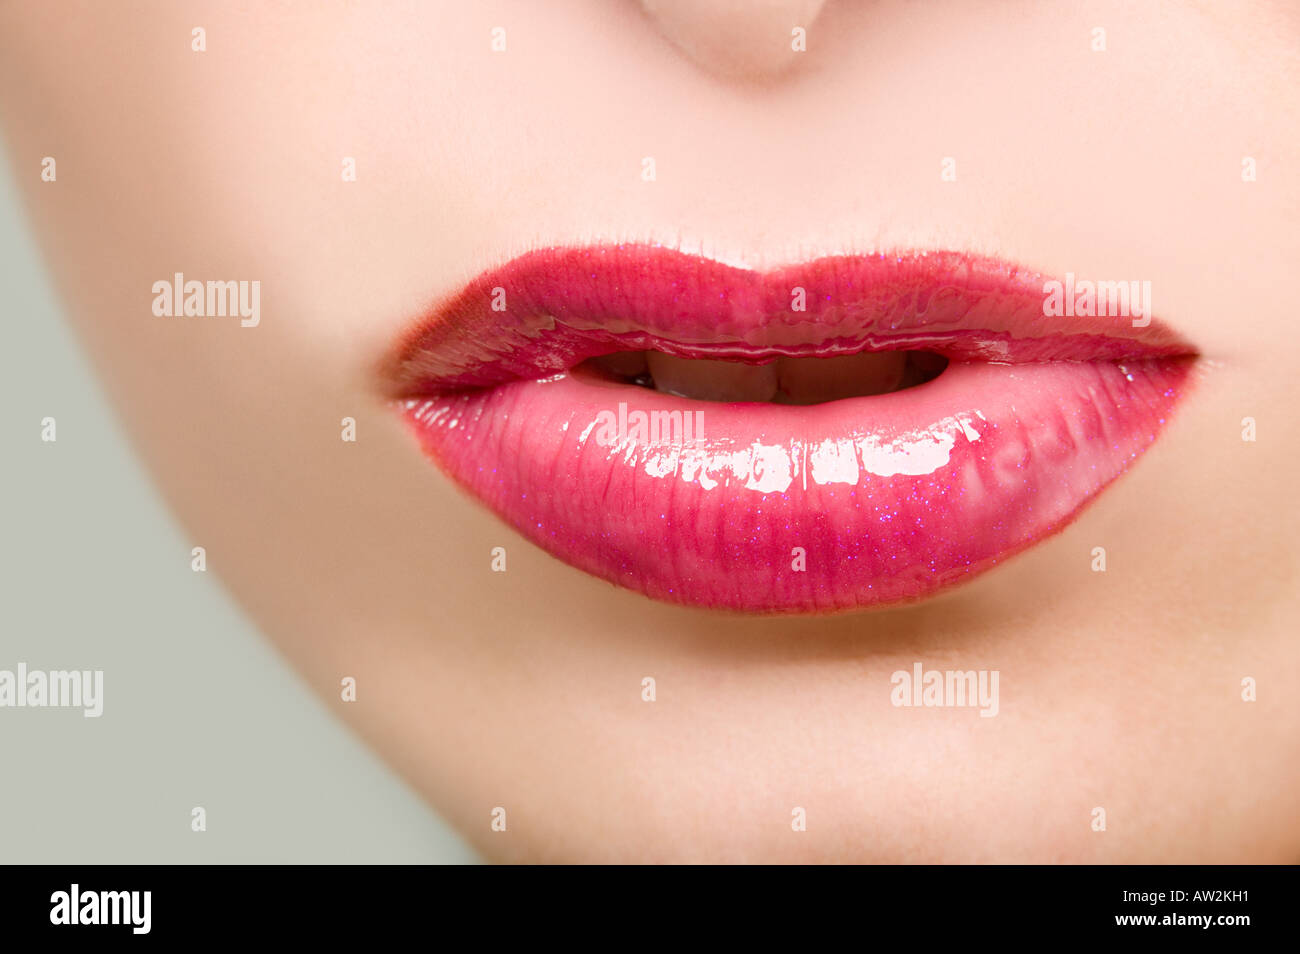 Woman wearing pink lipstick Stock Photo